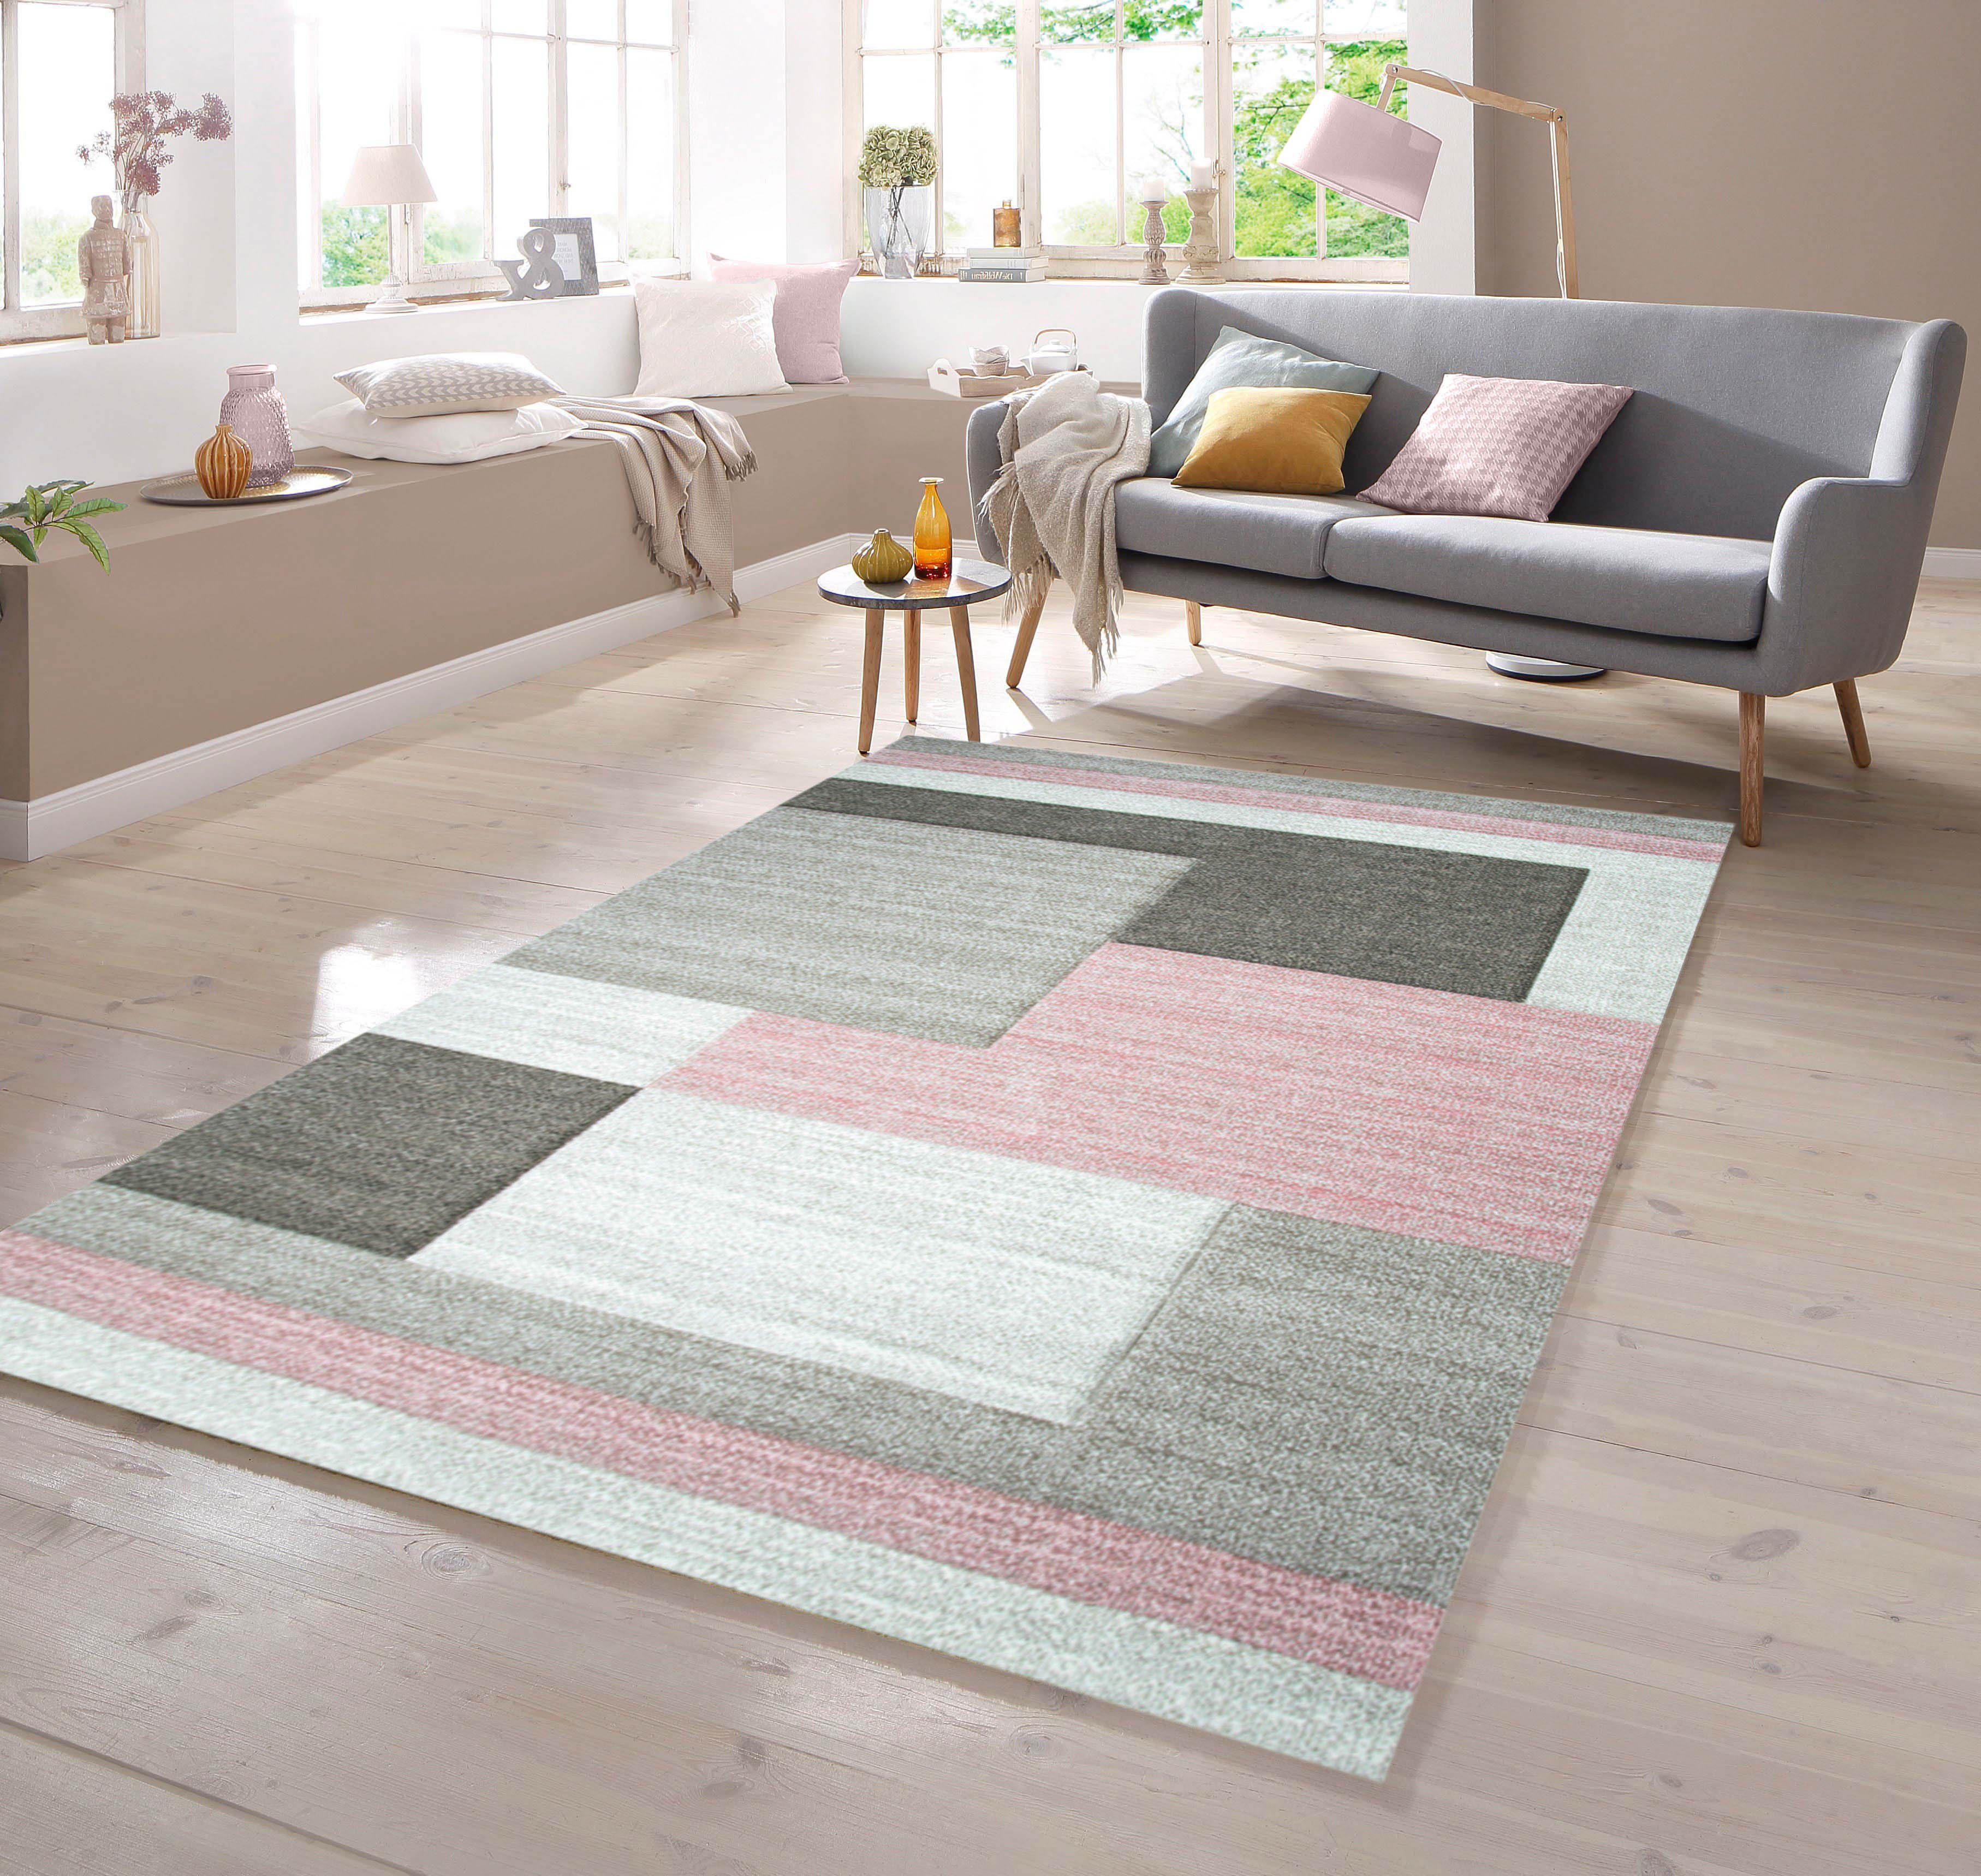 Teppich Designer Teppich Karo rechteckig Muster Pastellfarben mit TeppichHome24, Rosa Creme Konturenschnitt Beige